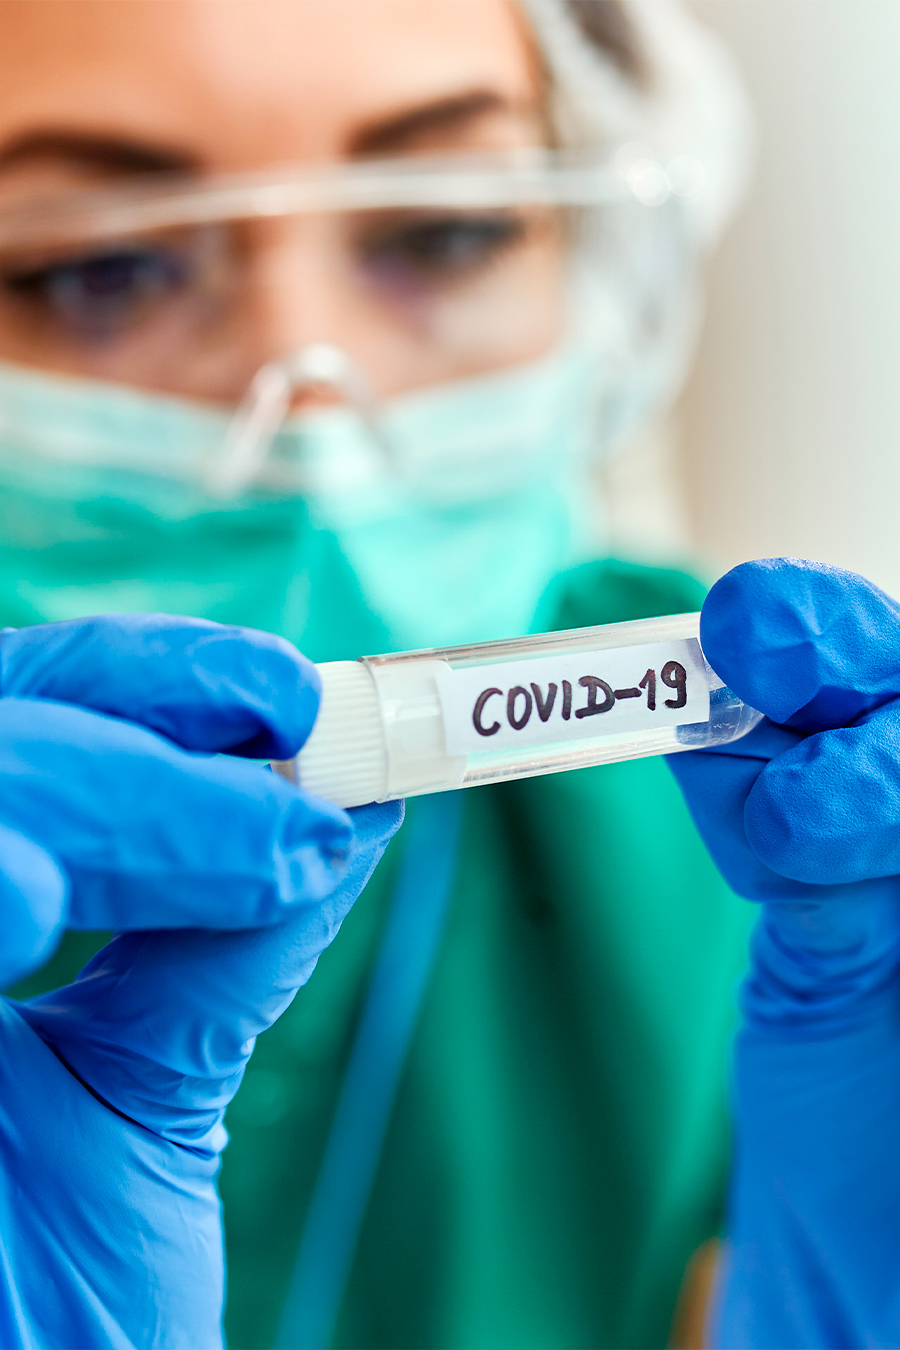 Coronavirus: conseguenze penali per chi non rispetta le regole. I rischi e le possibili strategie difensive.